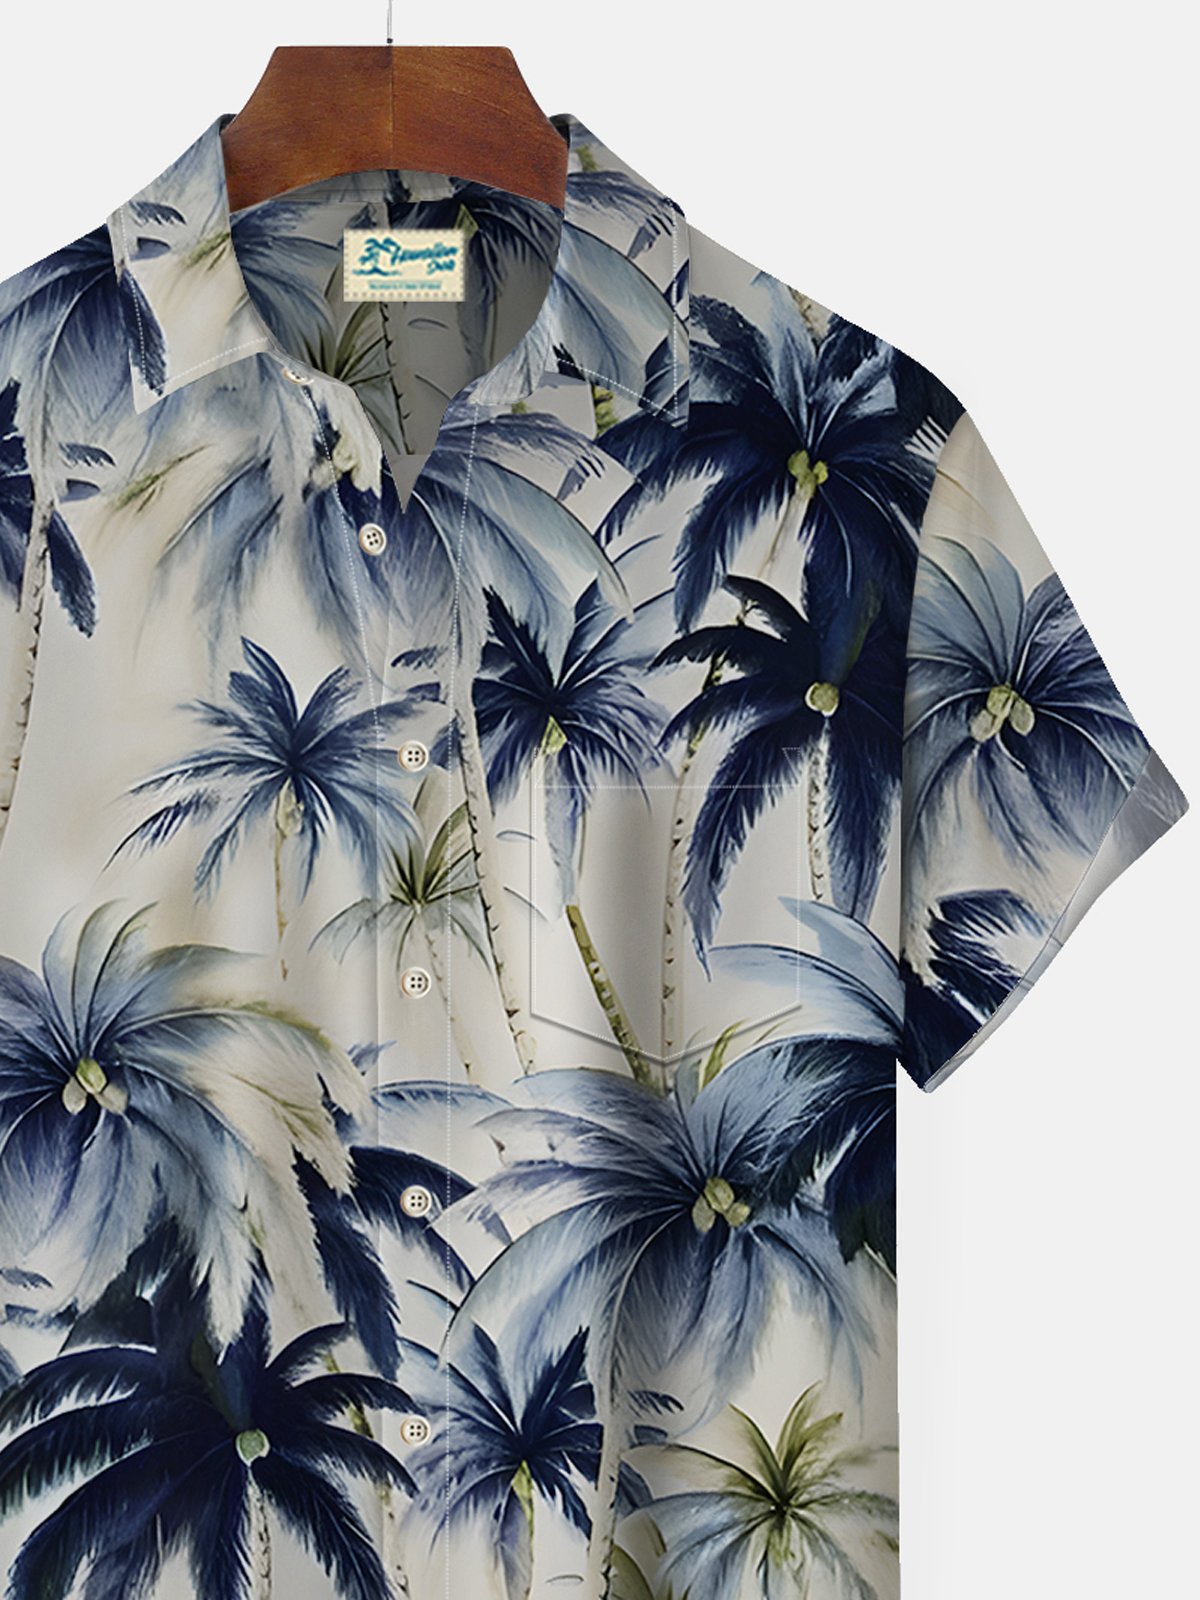 Royaura Beach Vacation Khaki Men's Hawaiian Shirts Vintage Coconut Tree Stretch Easy Care Pocket Camp Shirts